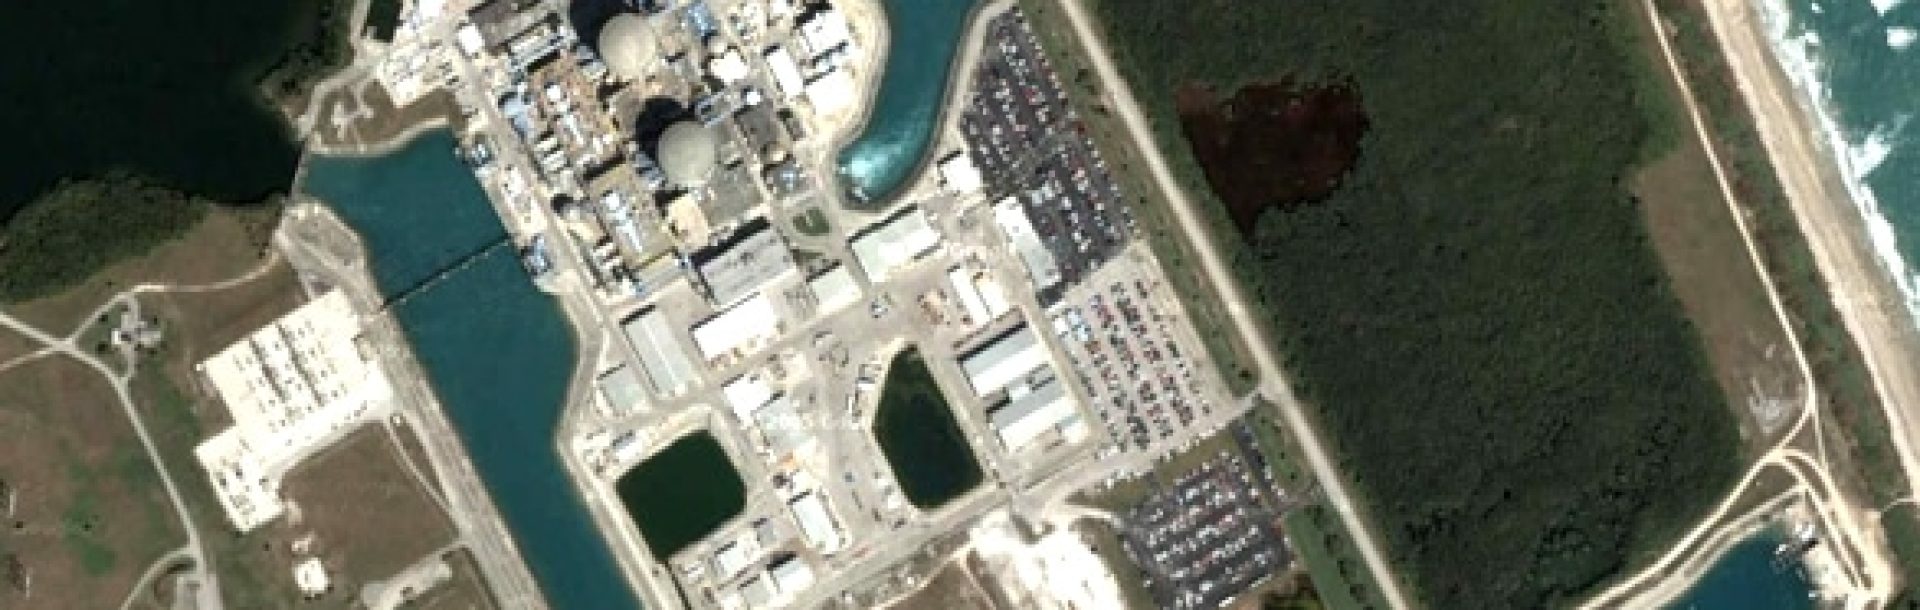 Saint Lucie Nuclear Power Plant